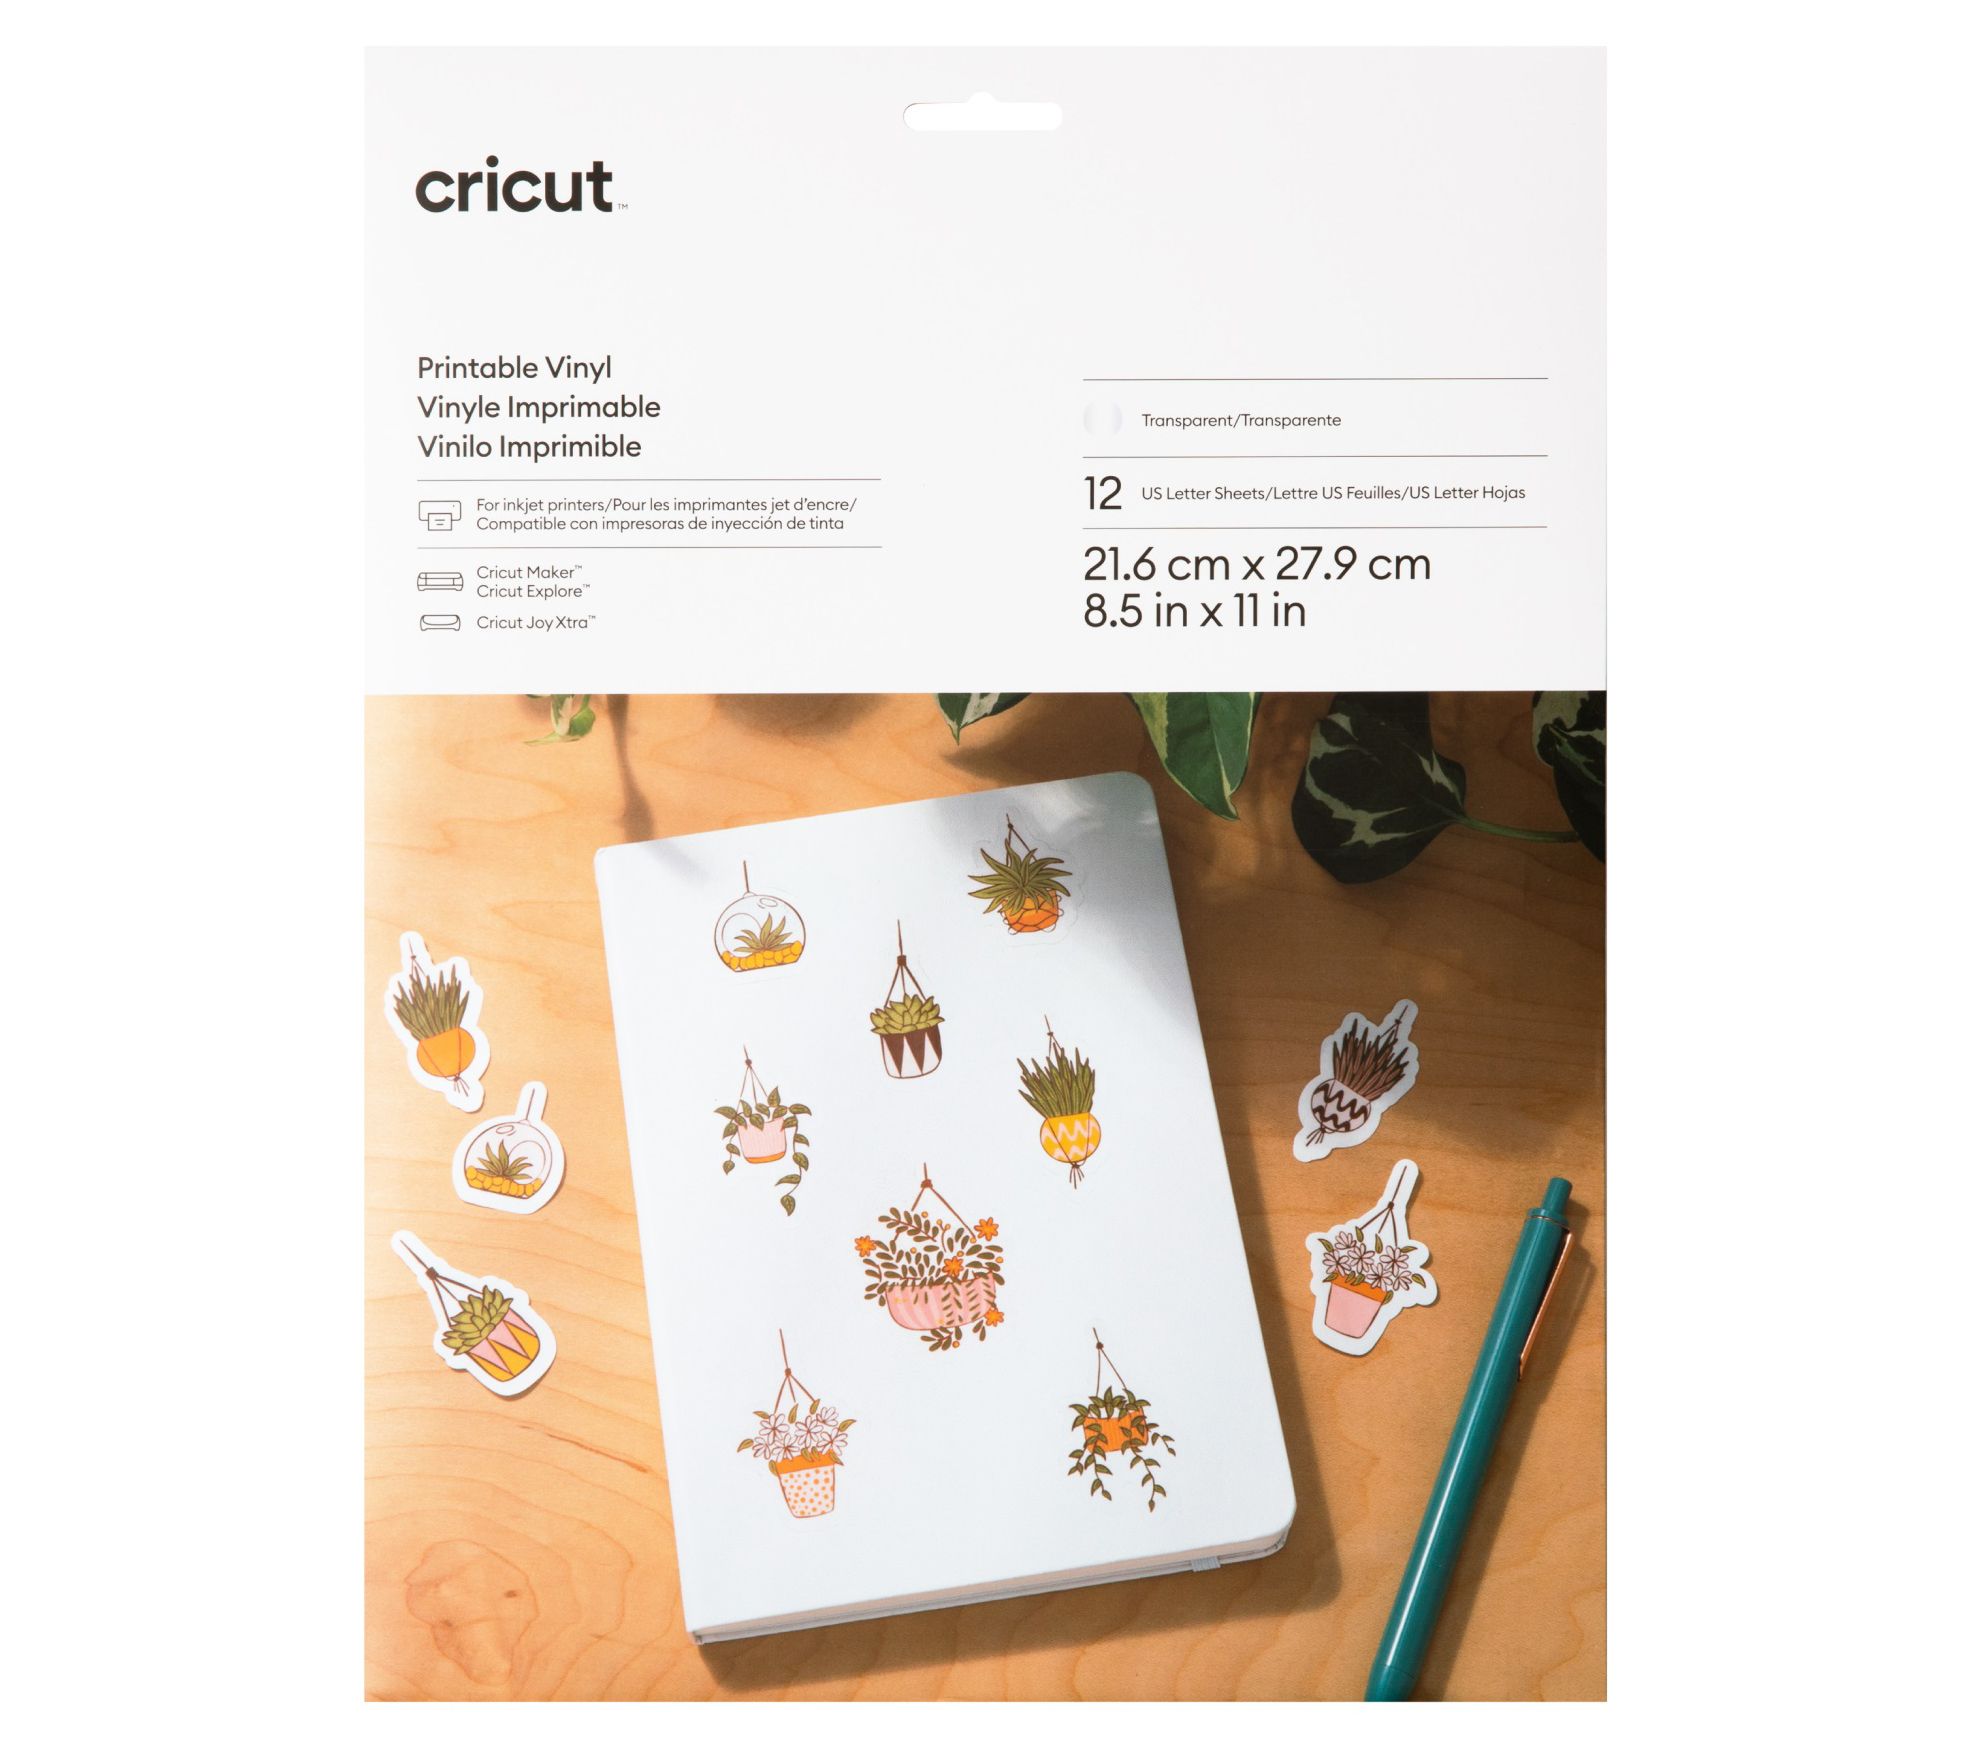 Cricut Smart Vinyl - Removable 25x5 